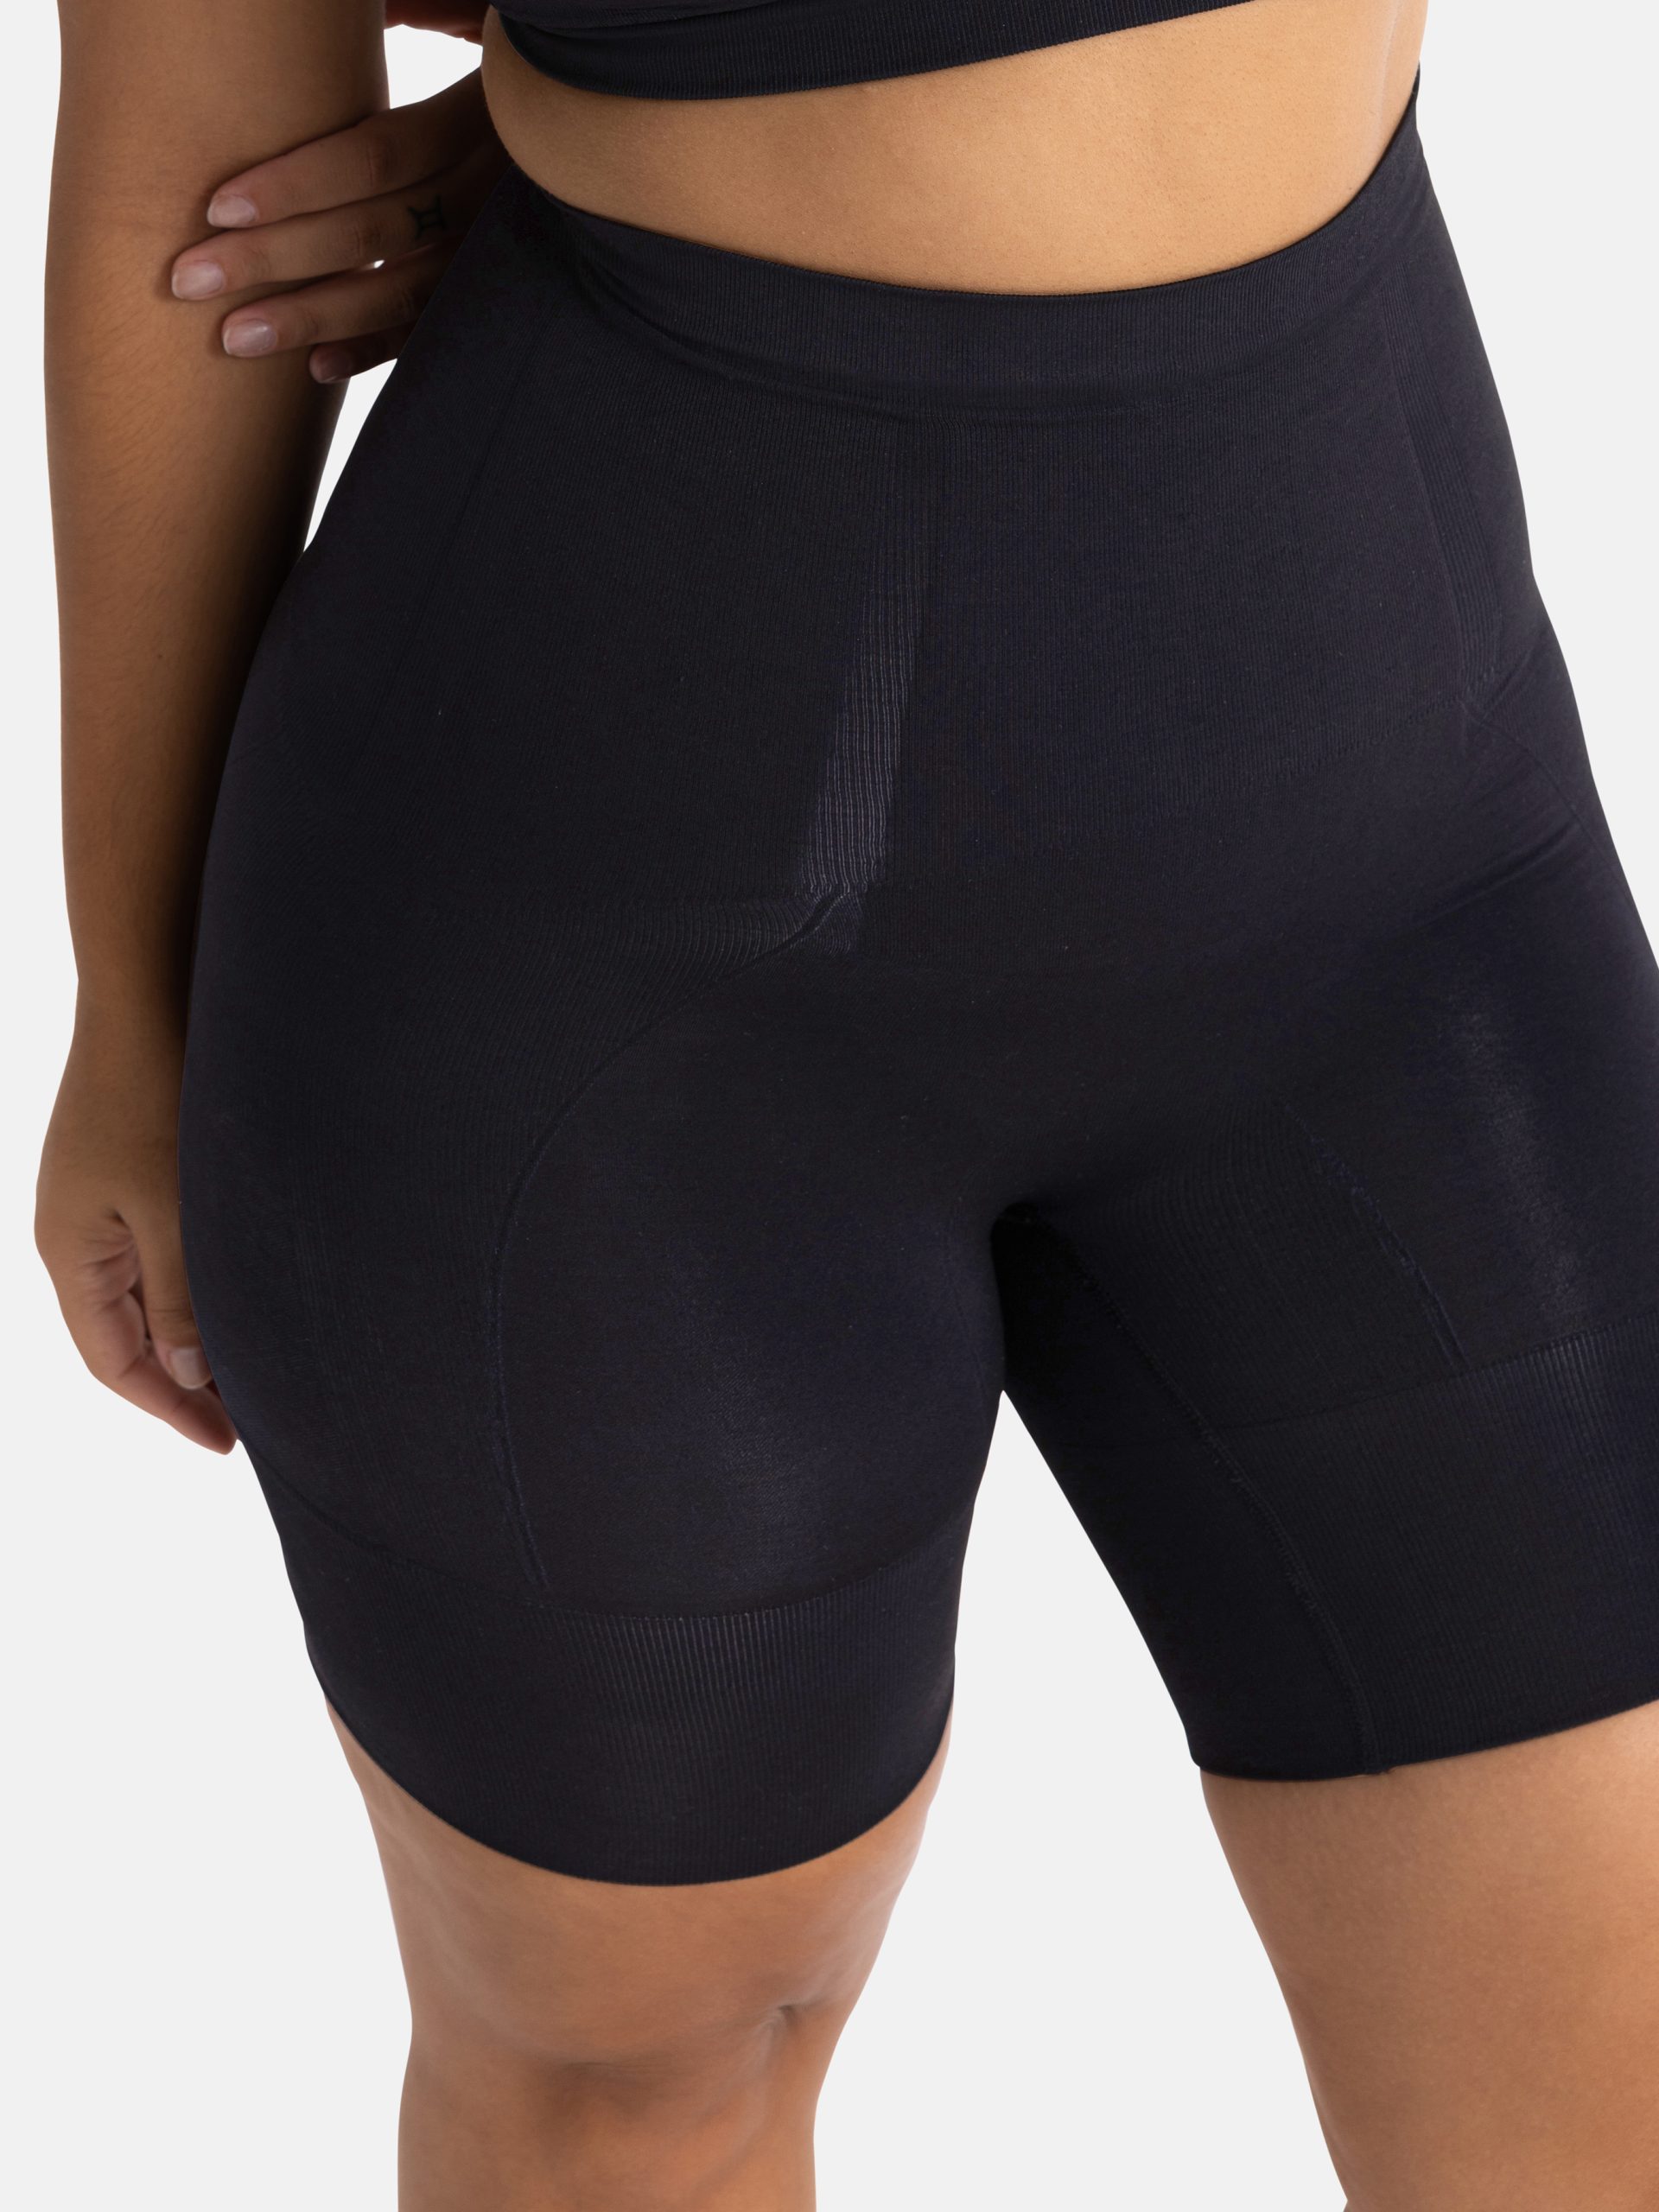 Dorina Absolute Sculpt seamless high control High- waist shorts in